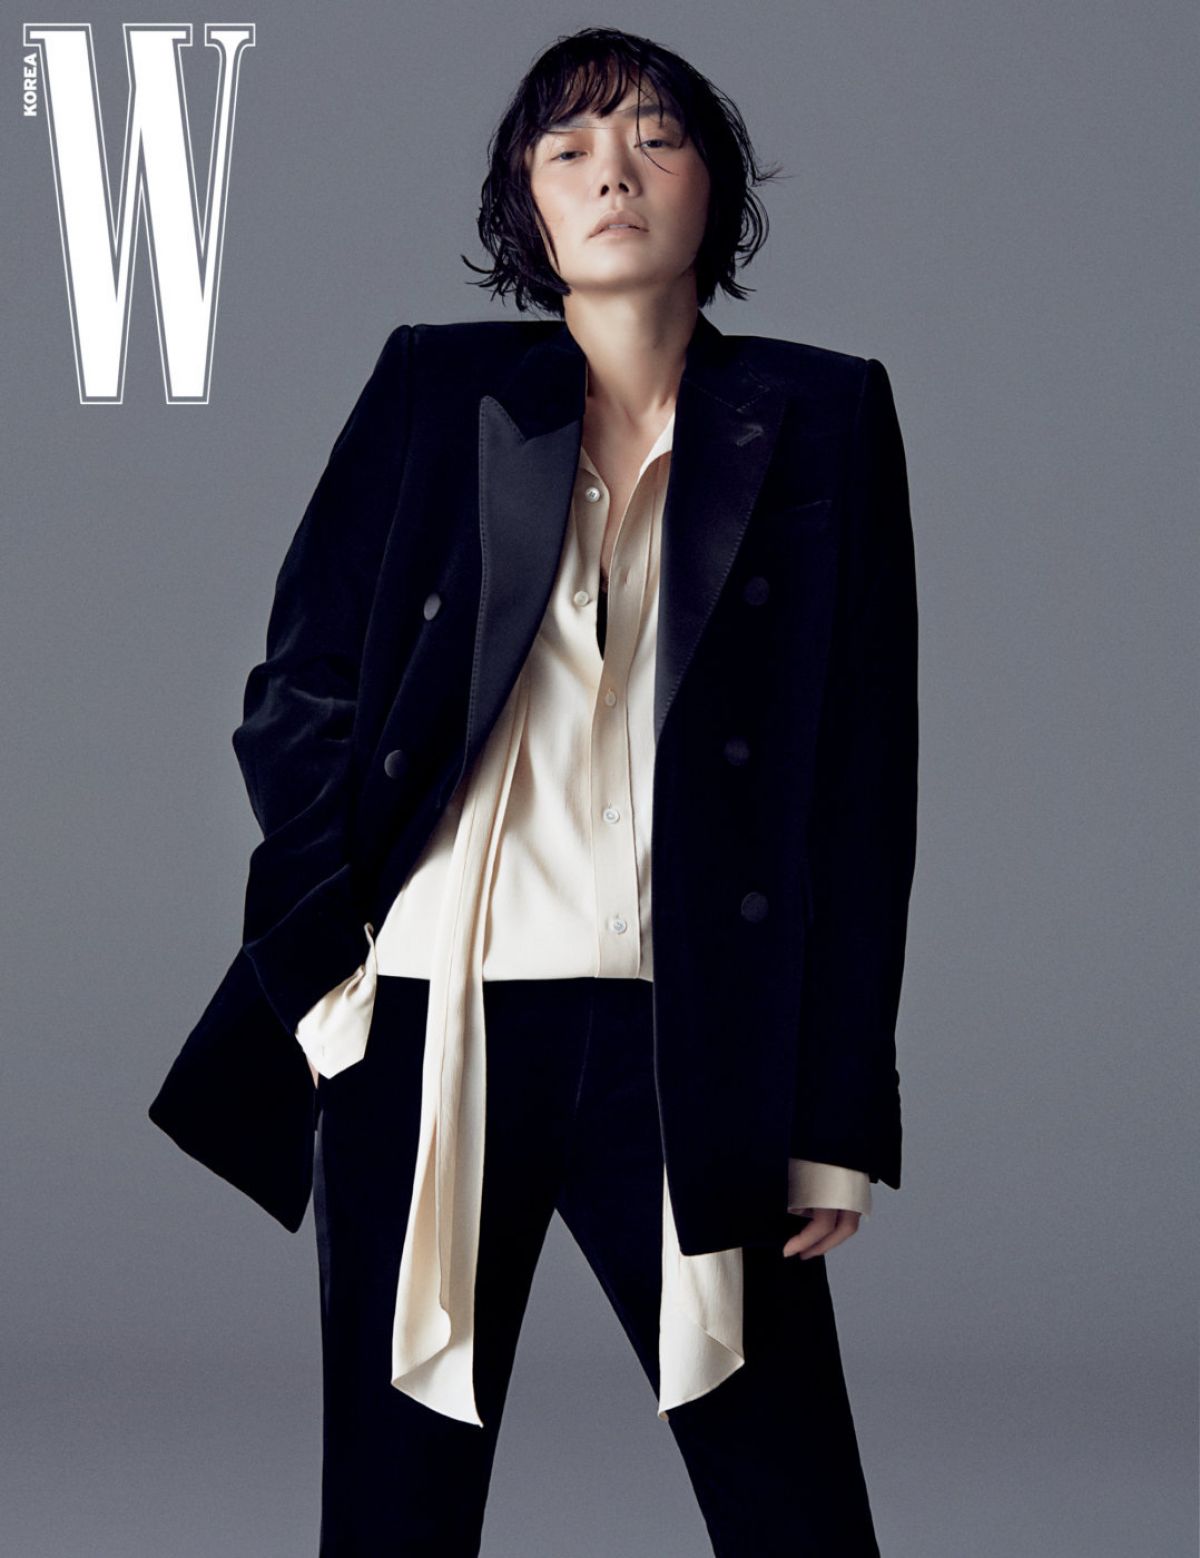 doona-bae-for-w-magazine-korea-september-2020-7.jpg